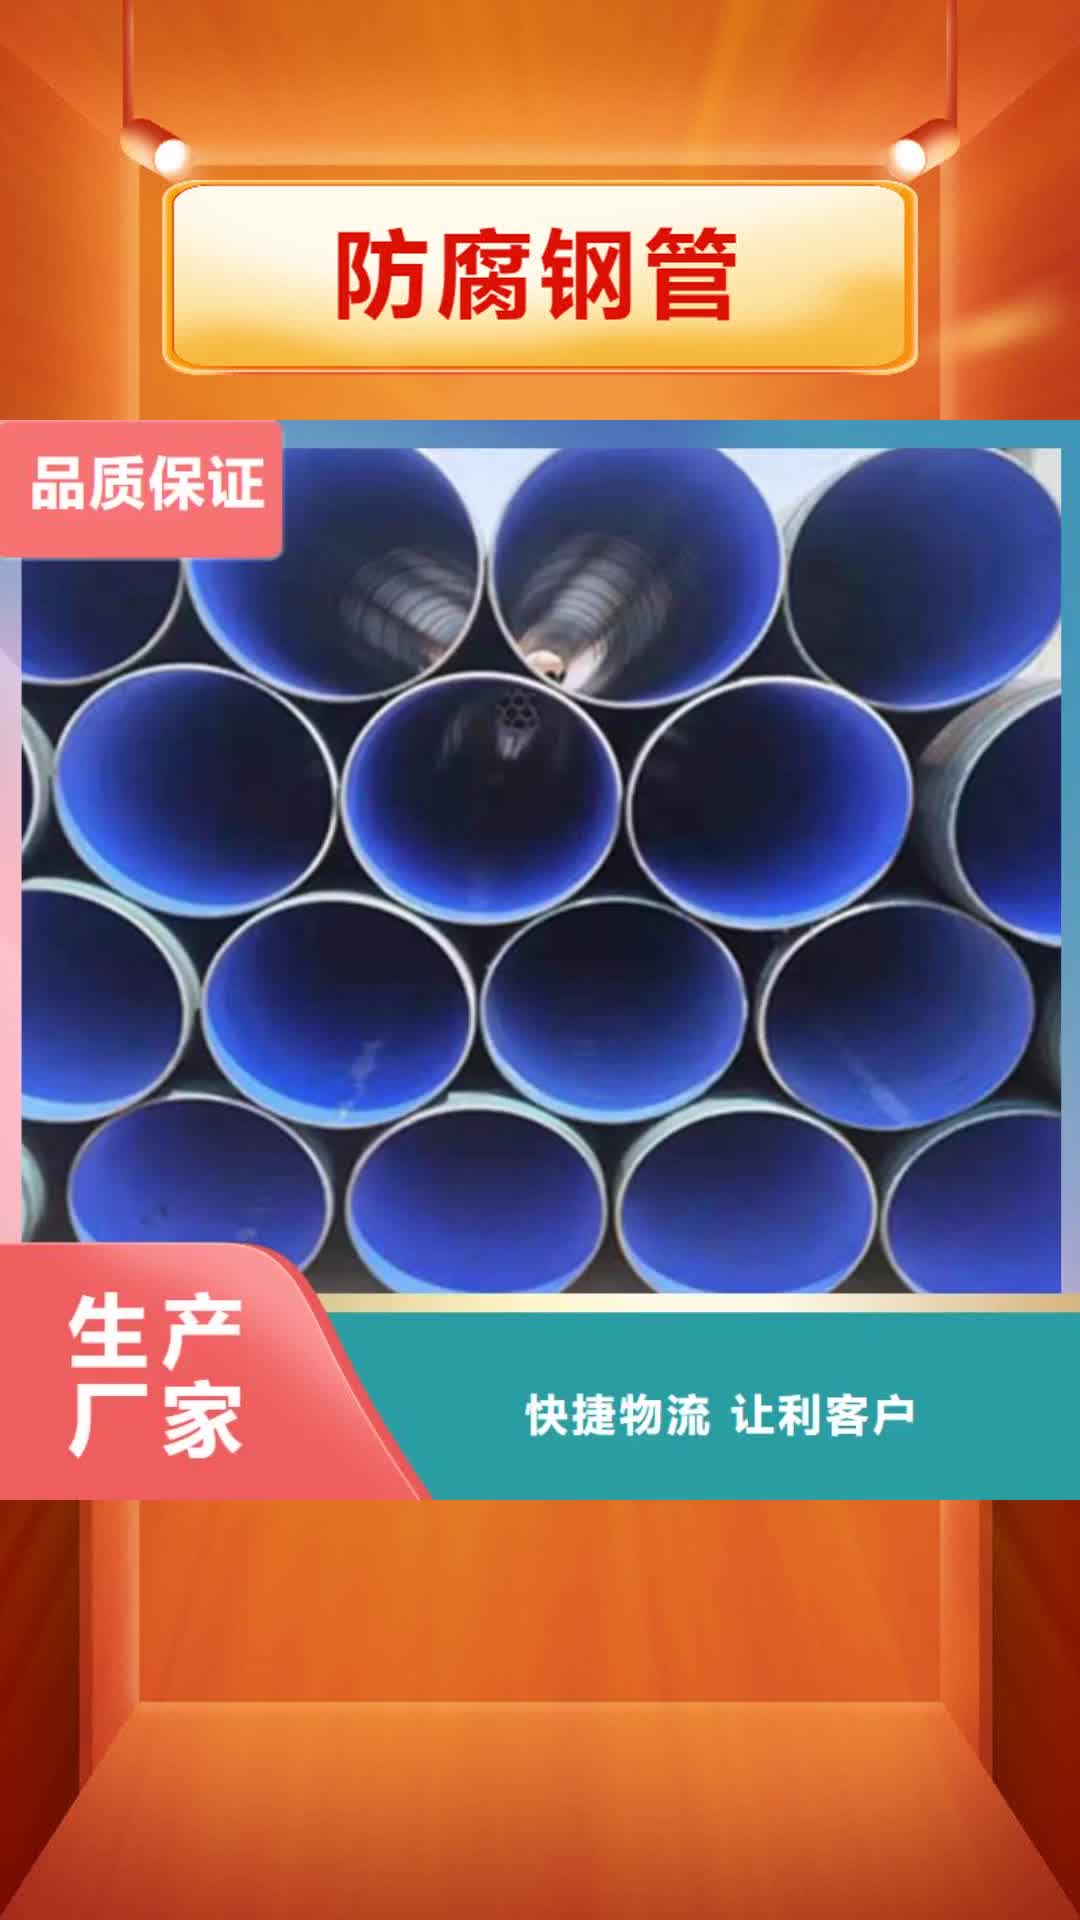 红河【防腐钢管】-3PE防腐钢管厂拒绝差价